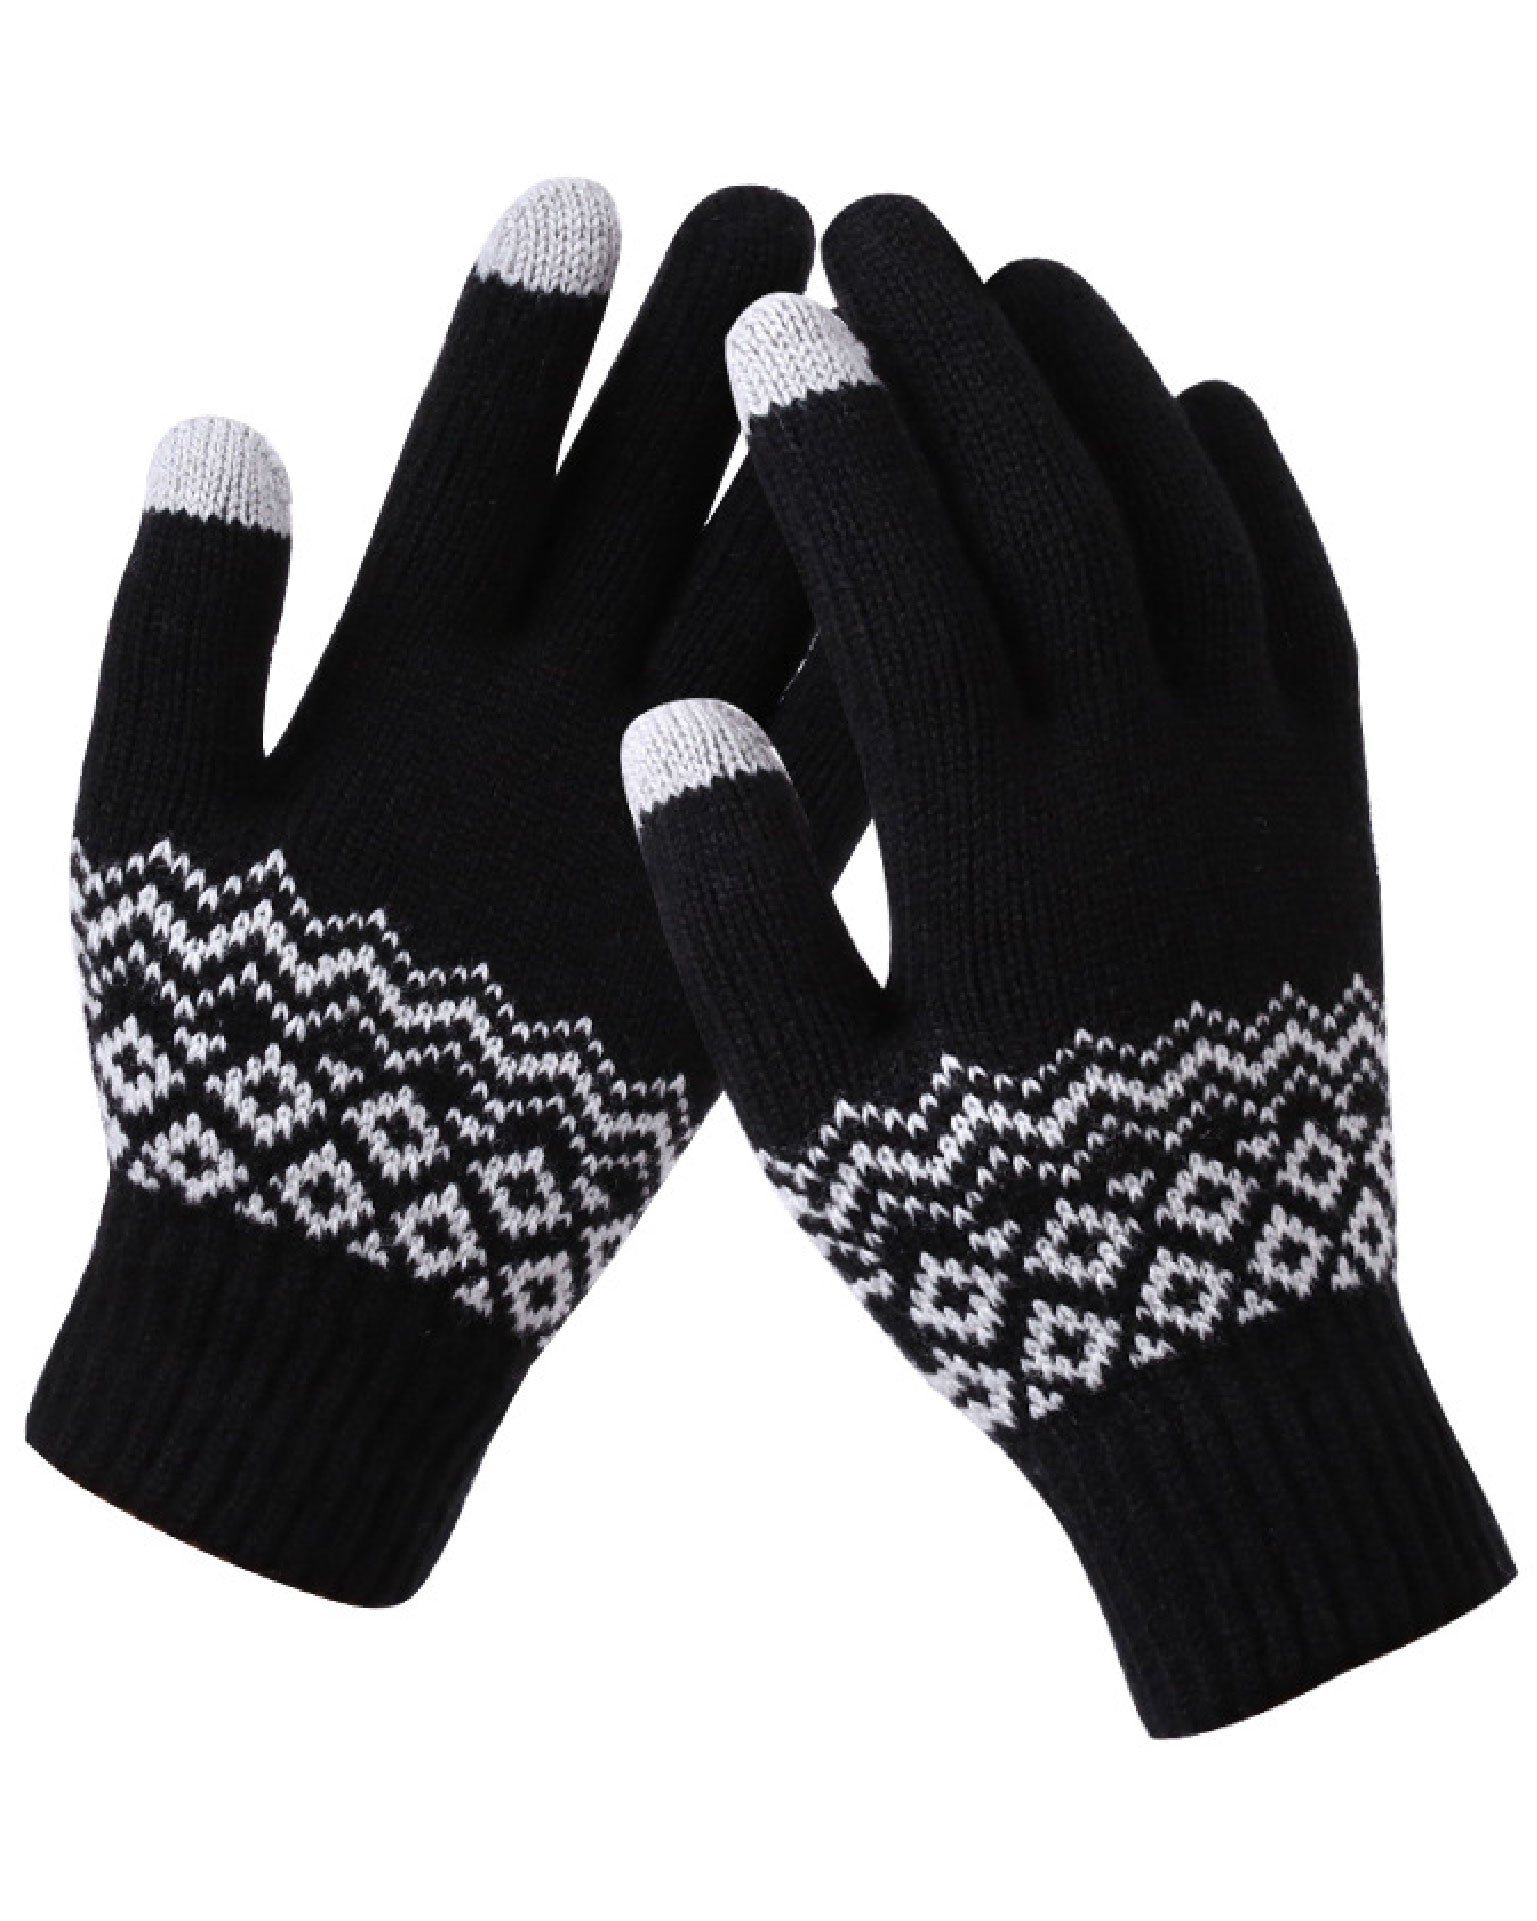 Gloves Fleece - Black - OneSize